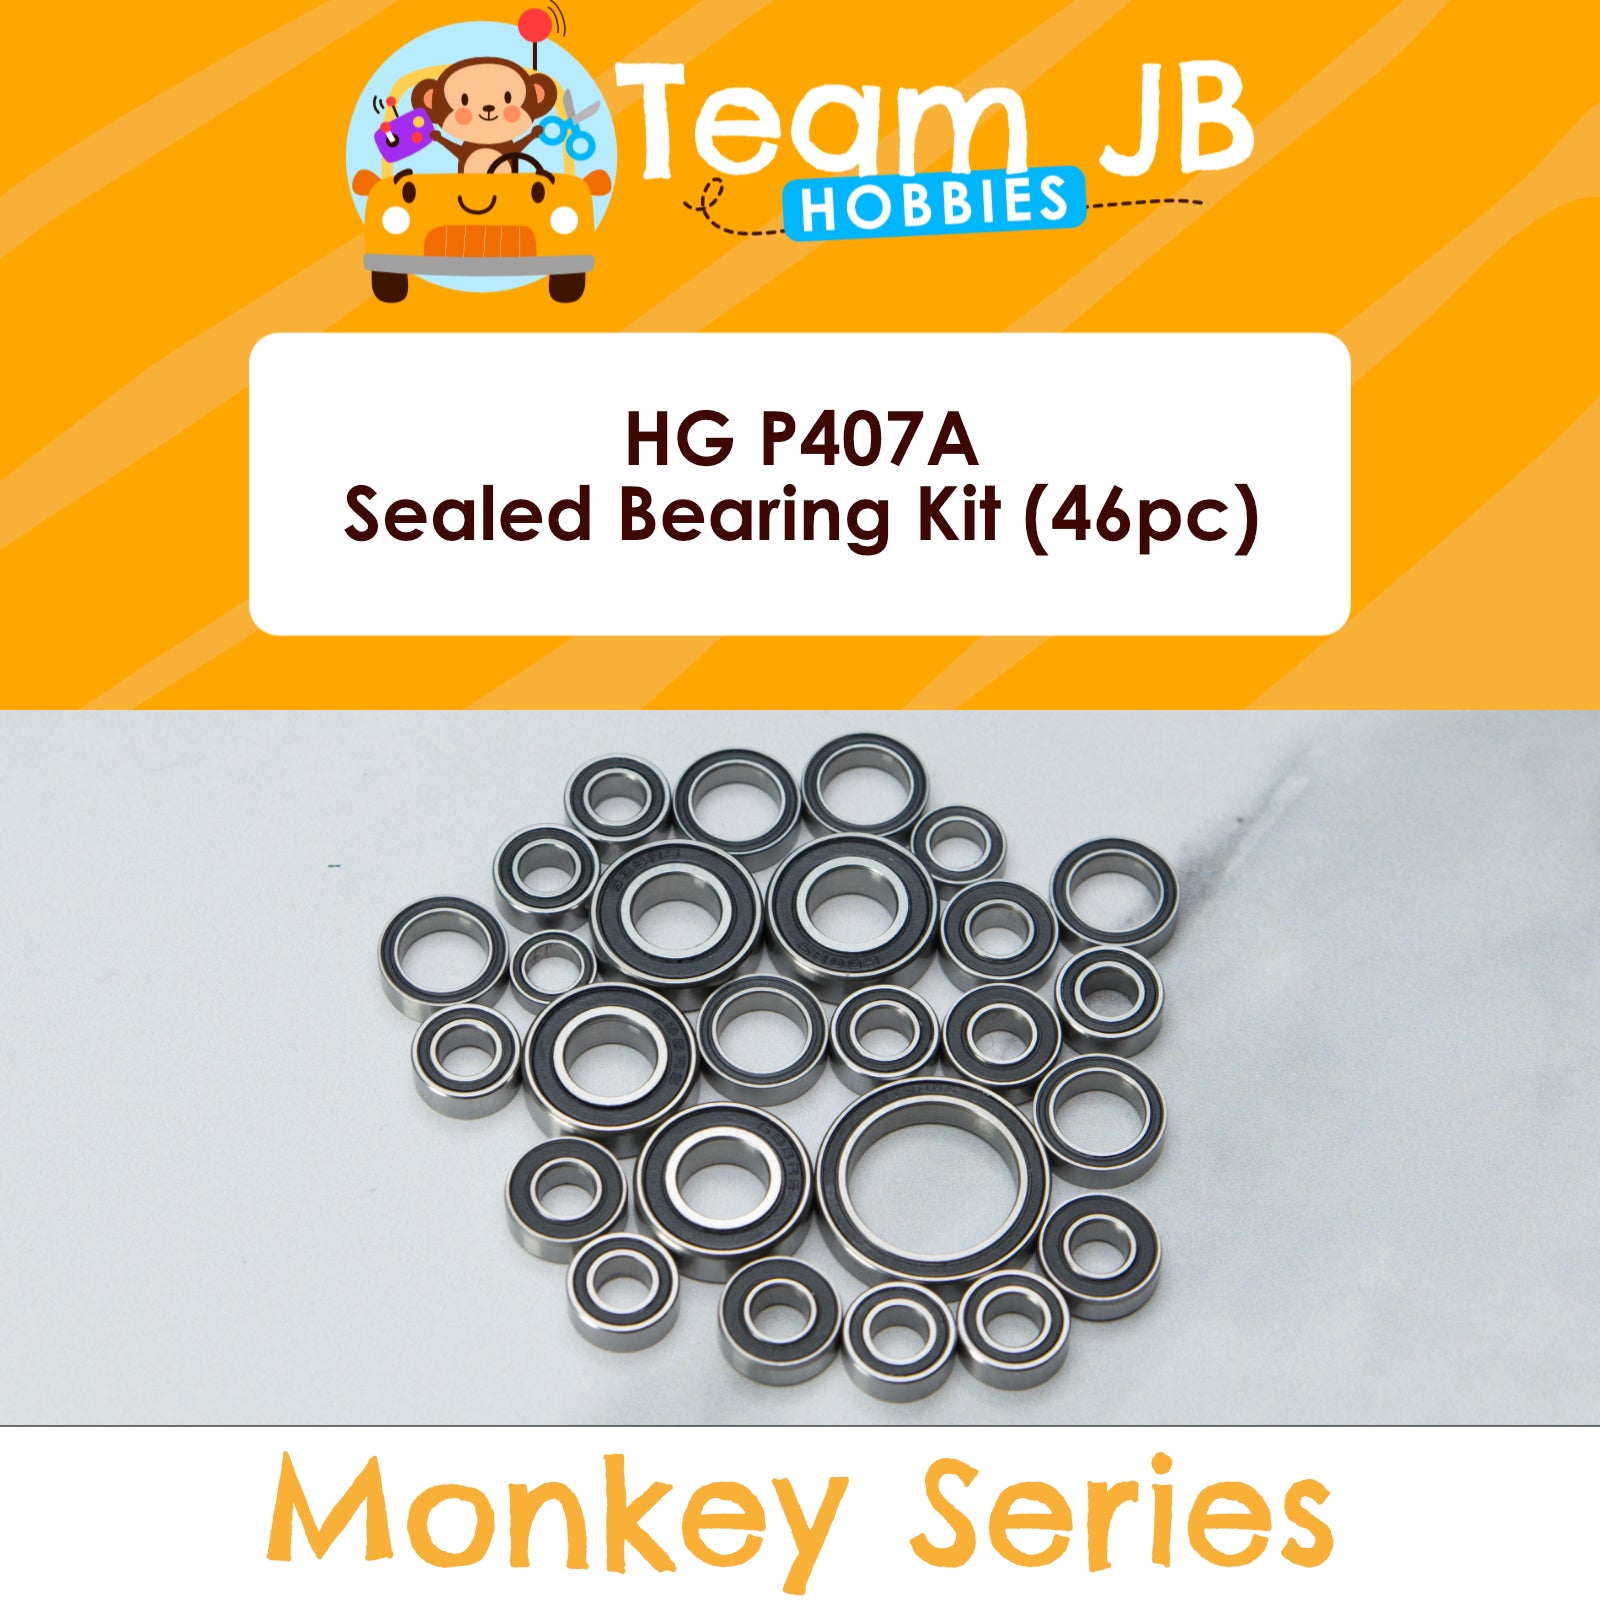 HG P407A - Sealed Bearing Kit